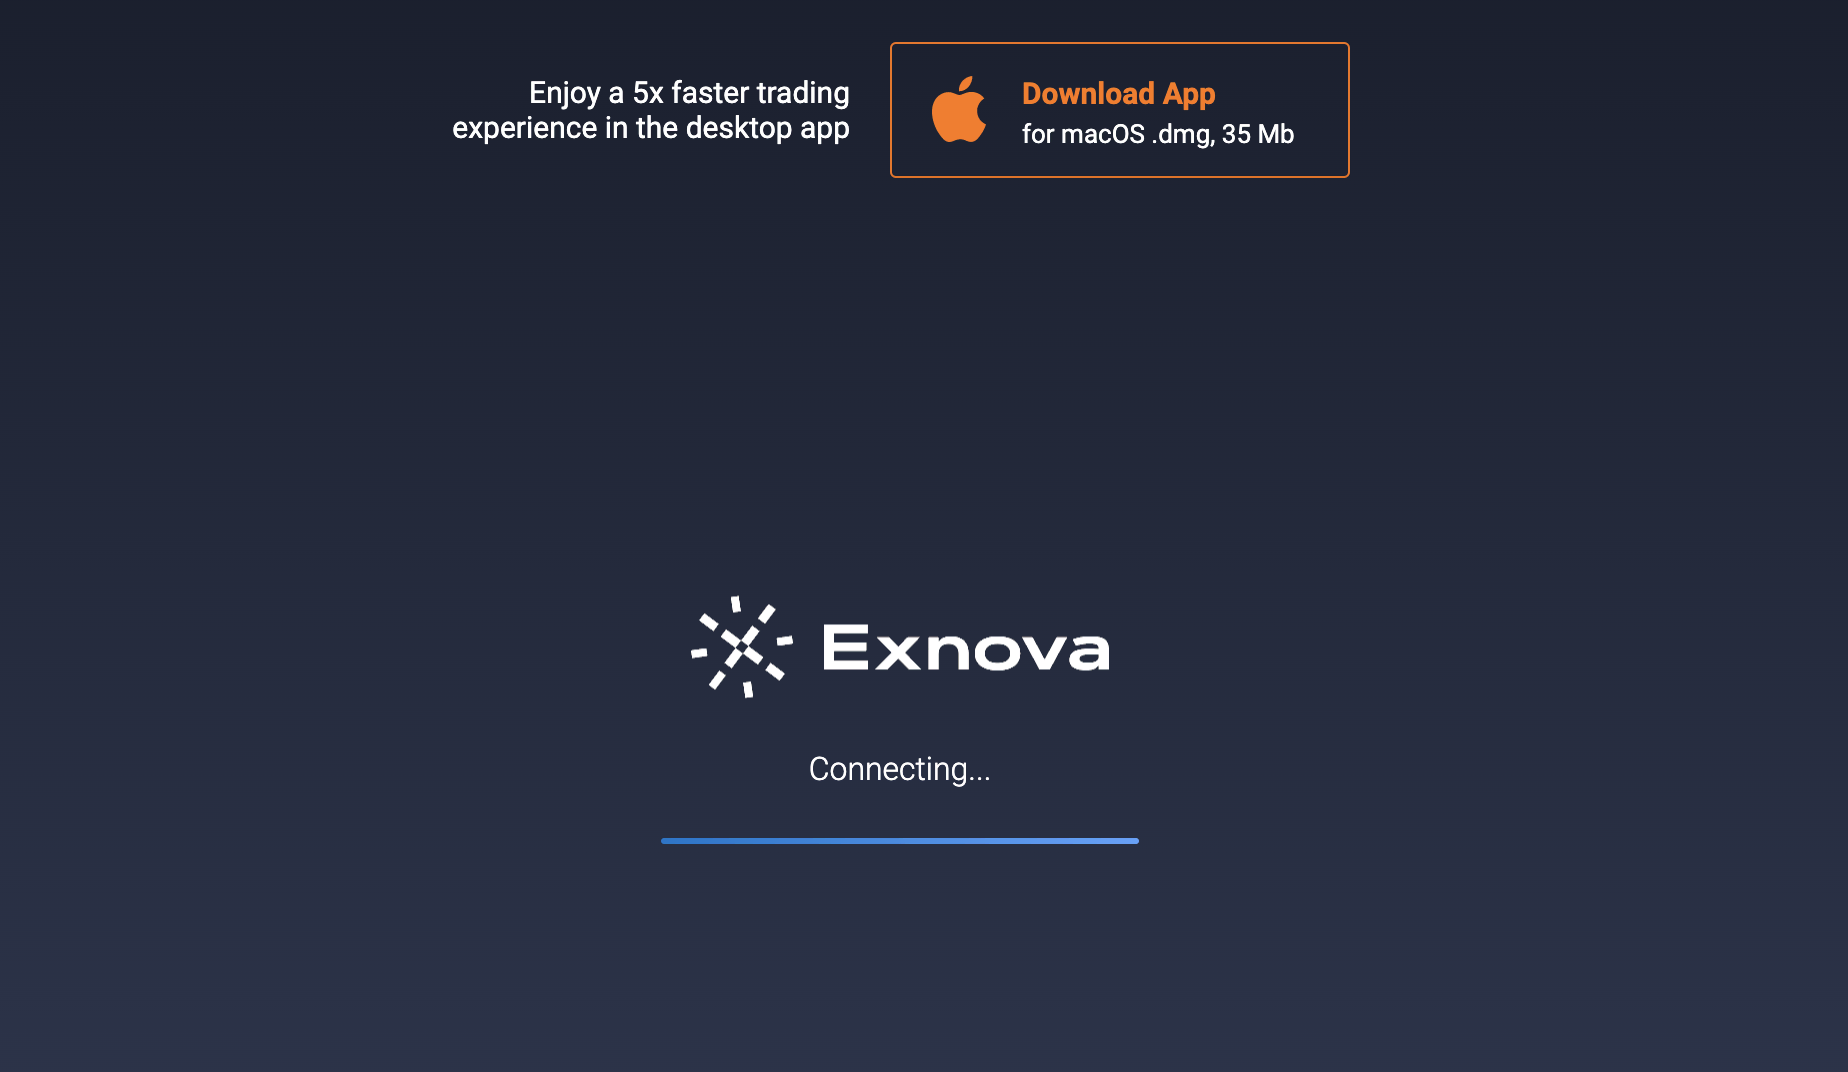 Come scaricare l'app mobile Exnova